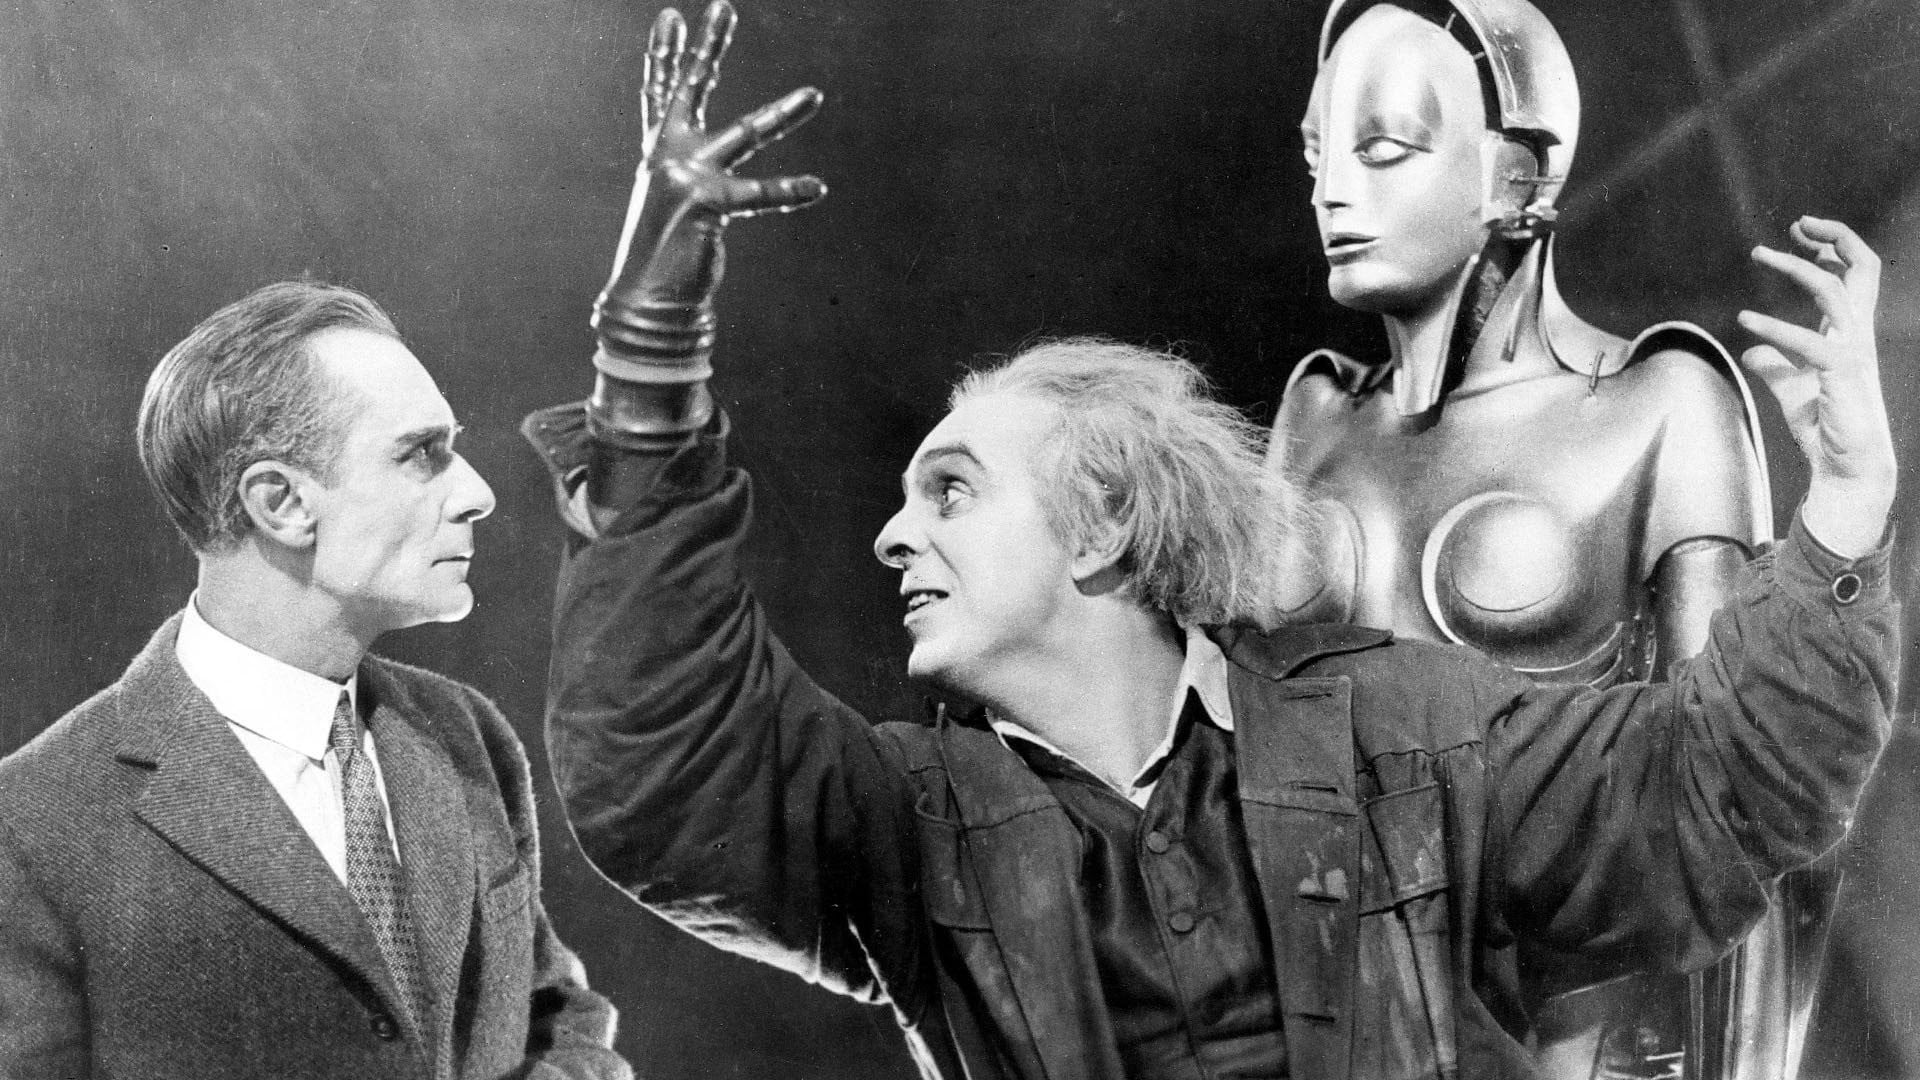 ‘Metropolis’ (1927) – Fritz Lang’s movie masterpiece